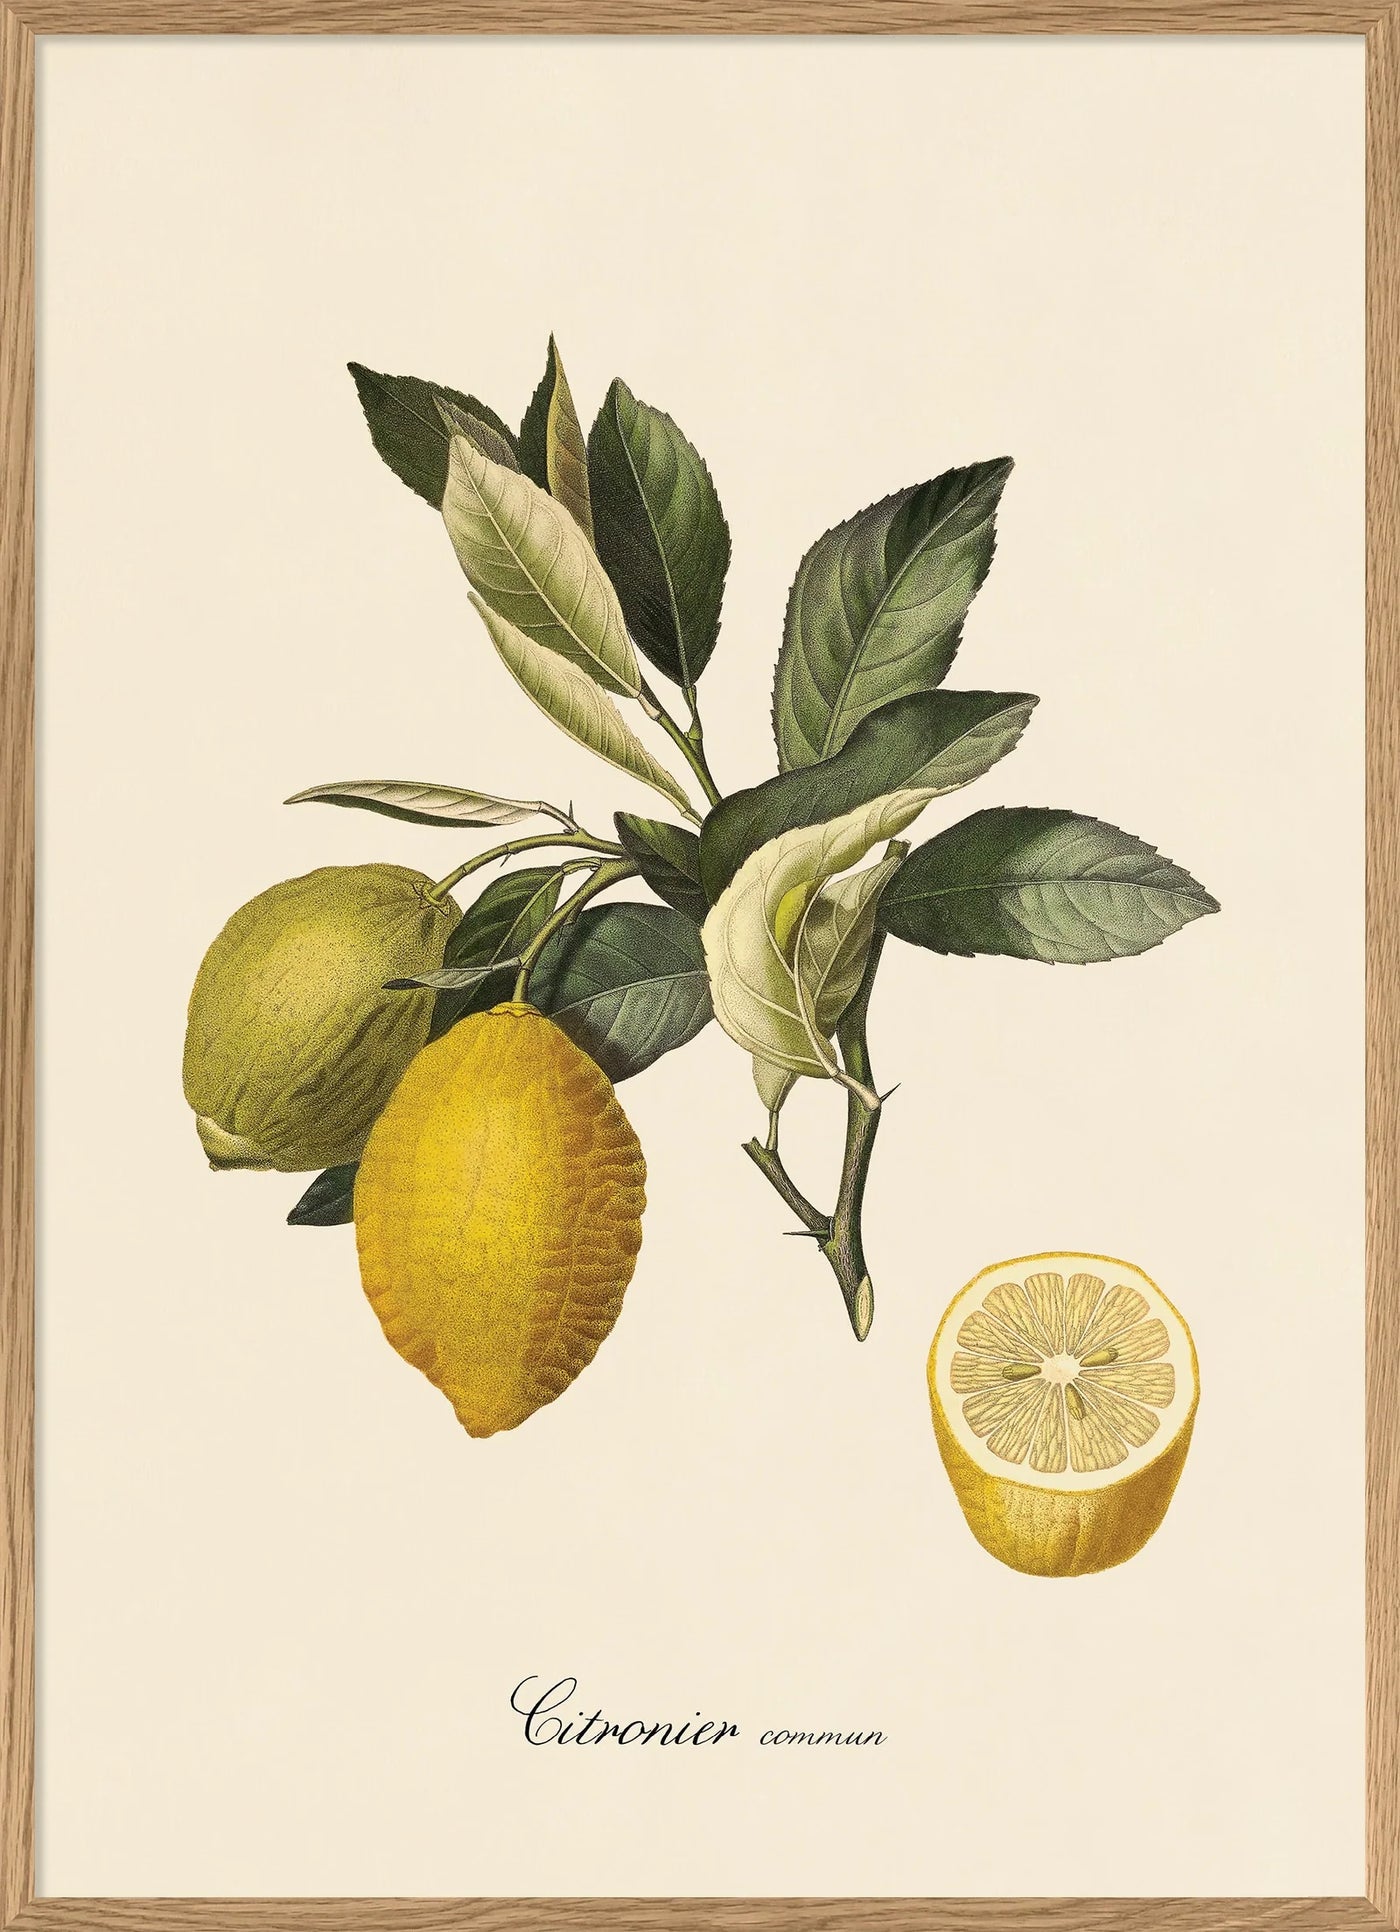 Lemon Botanical Print